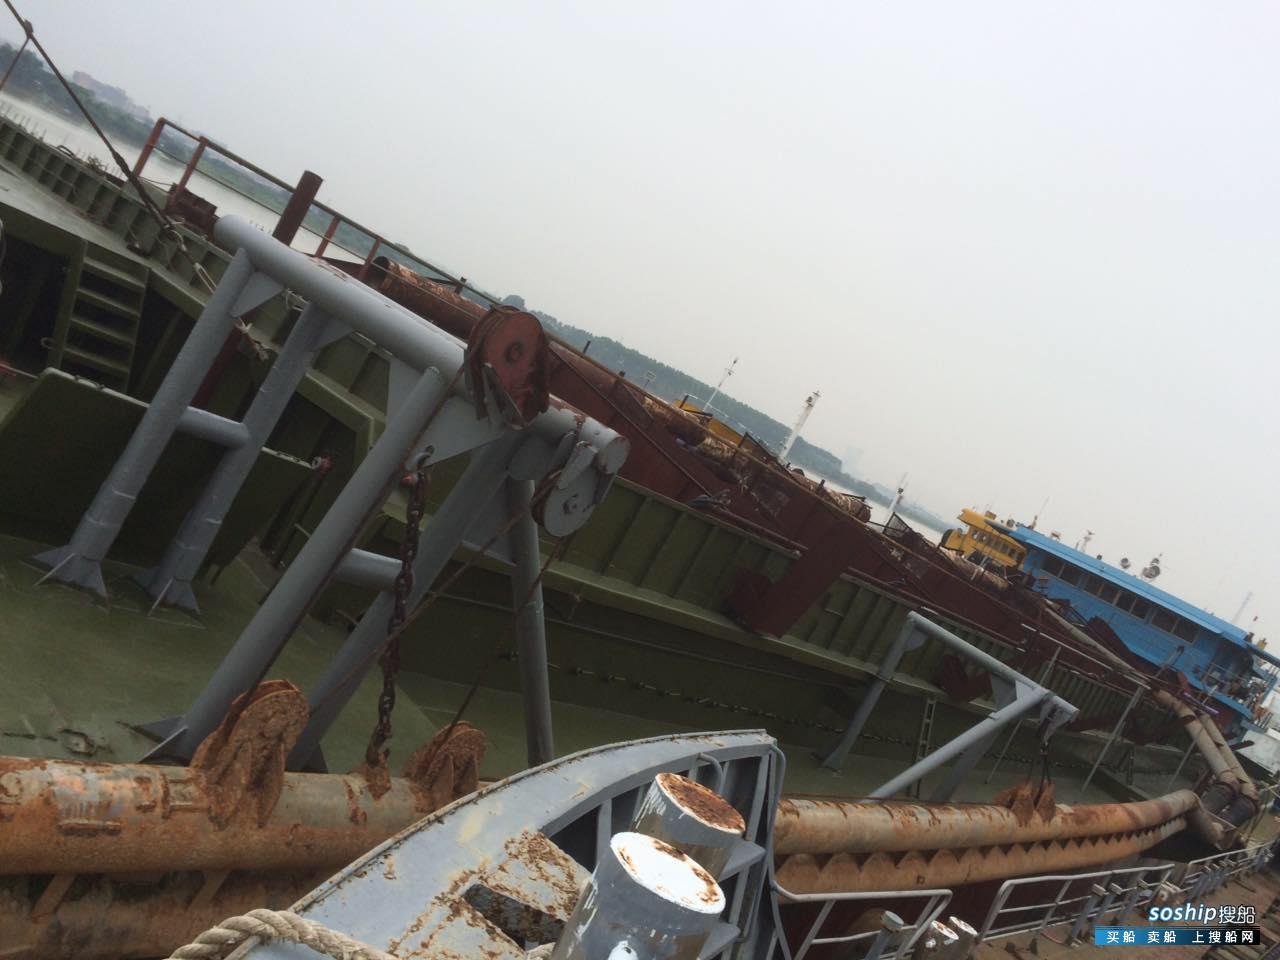 耙吸式挖泥船 出售2000立方米耙吸式挖泥船